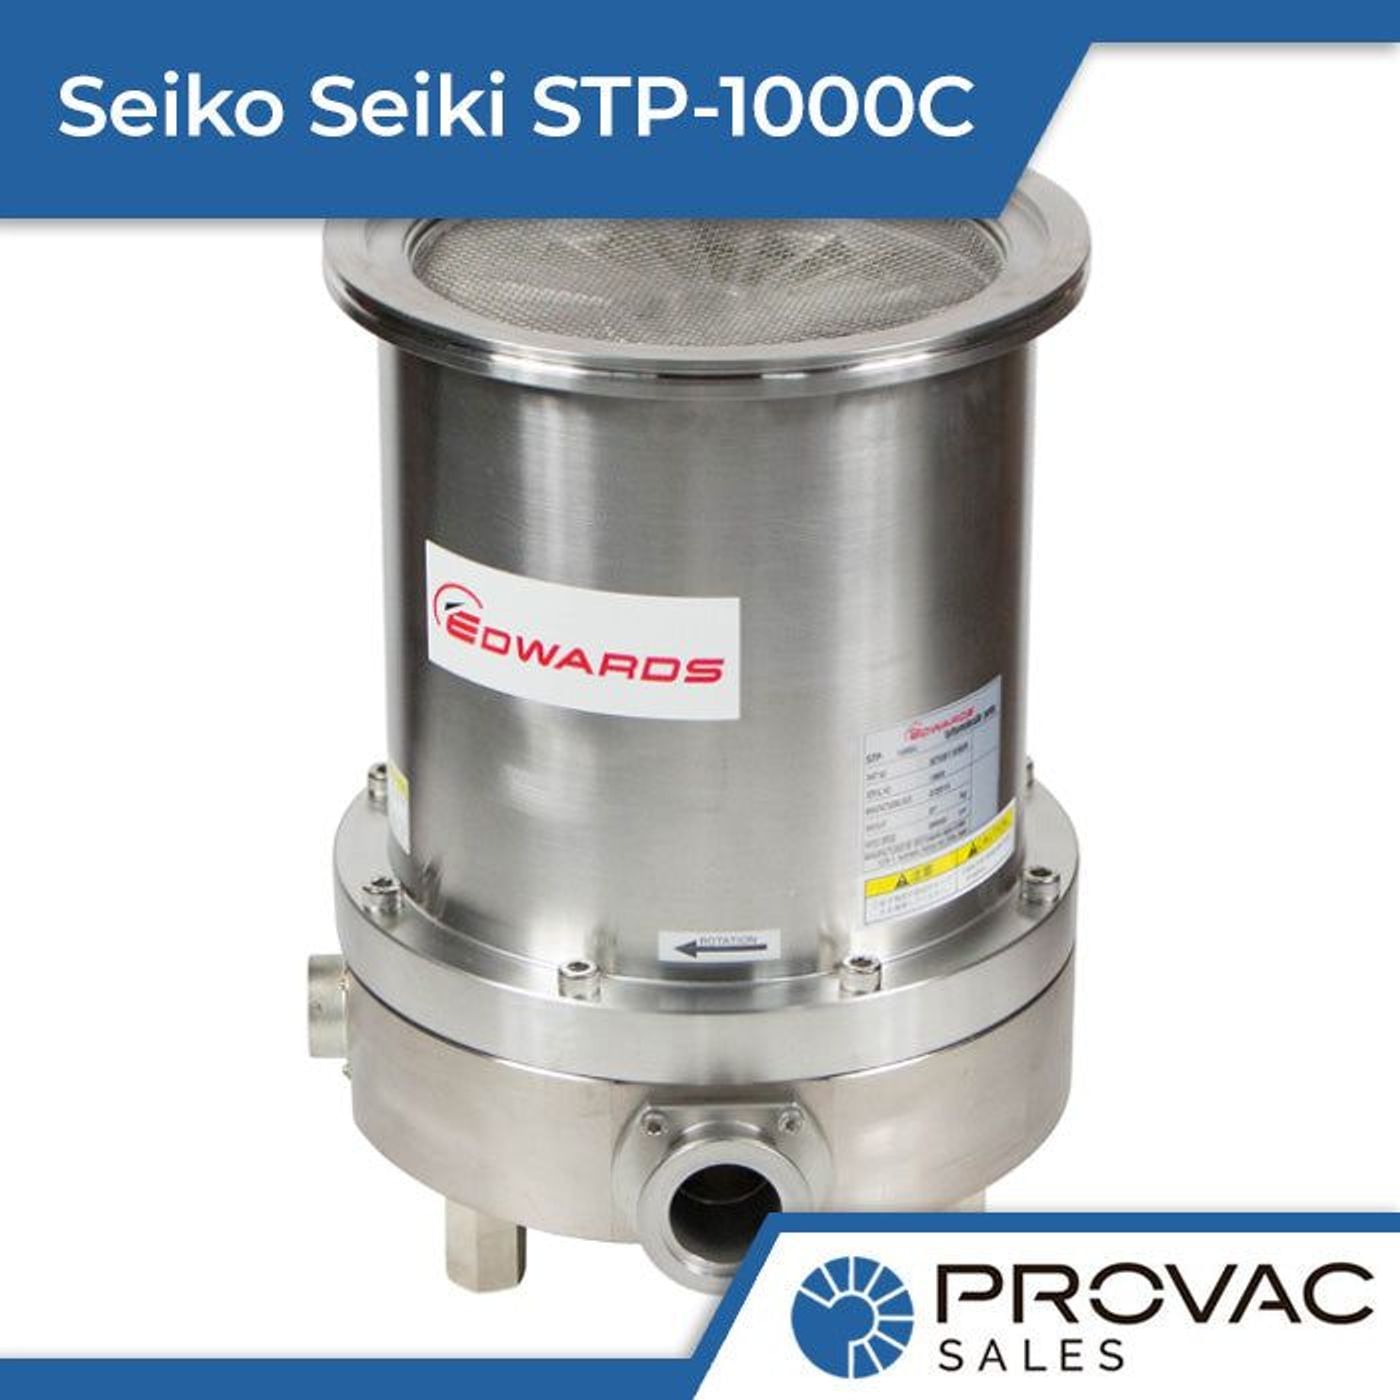 Seiko Seiki STP-1000C Turbomolecular Pump